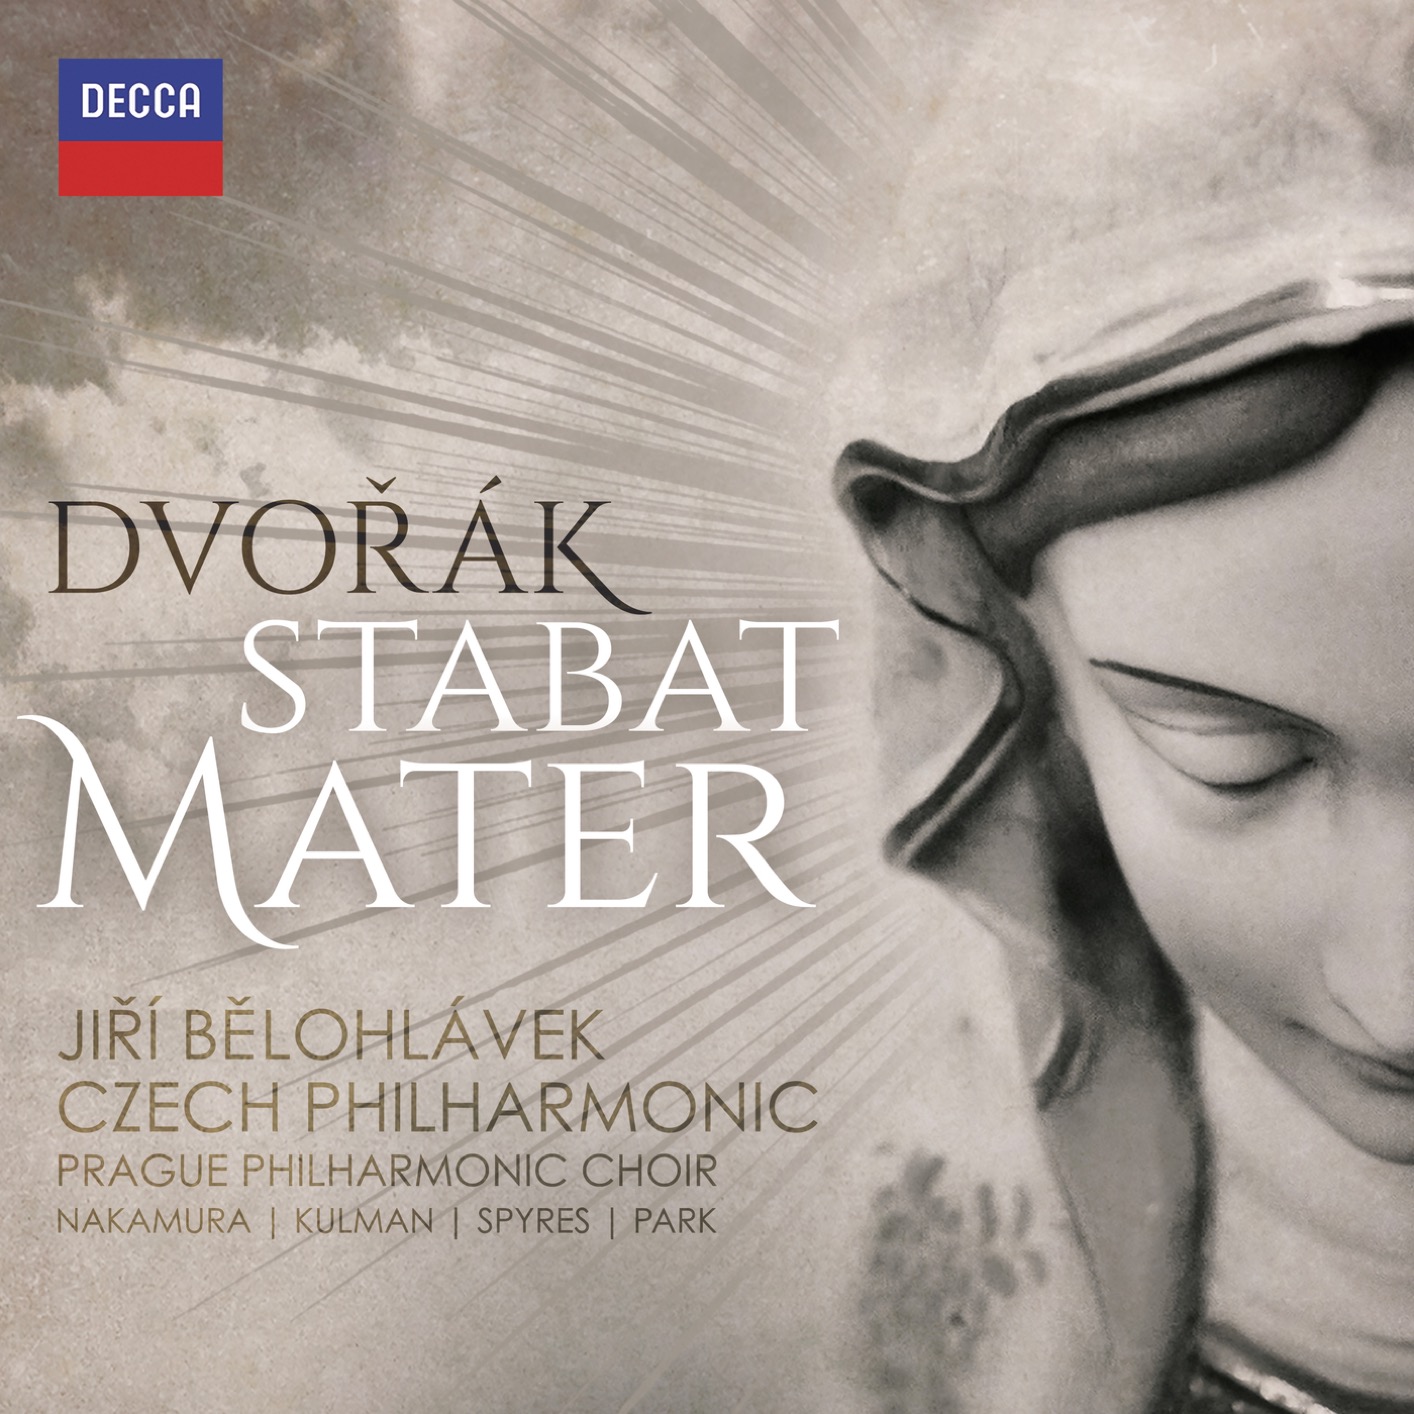 Czech Philharmonic & Jiri Belohlavek – Dvorak: Stabat Mater, Op.58, B.71 (2017) [Qobuz FLAC 24bit/96kHz]